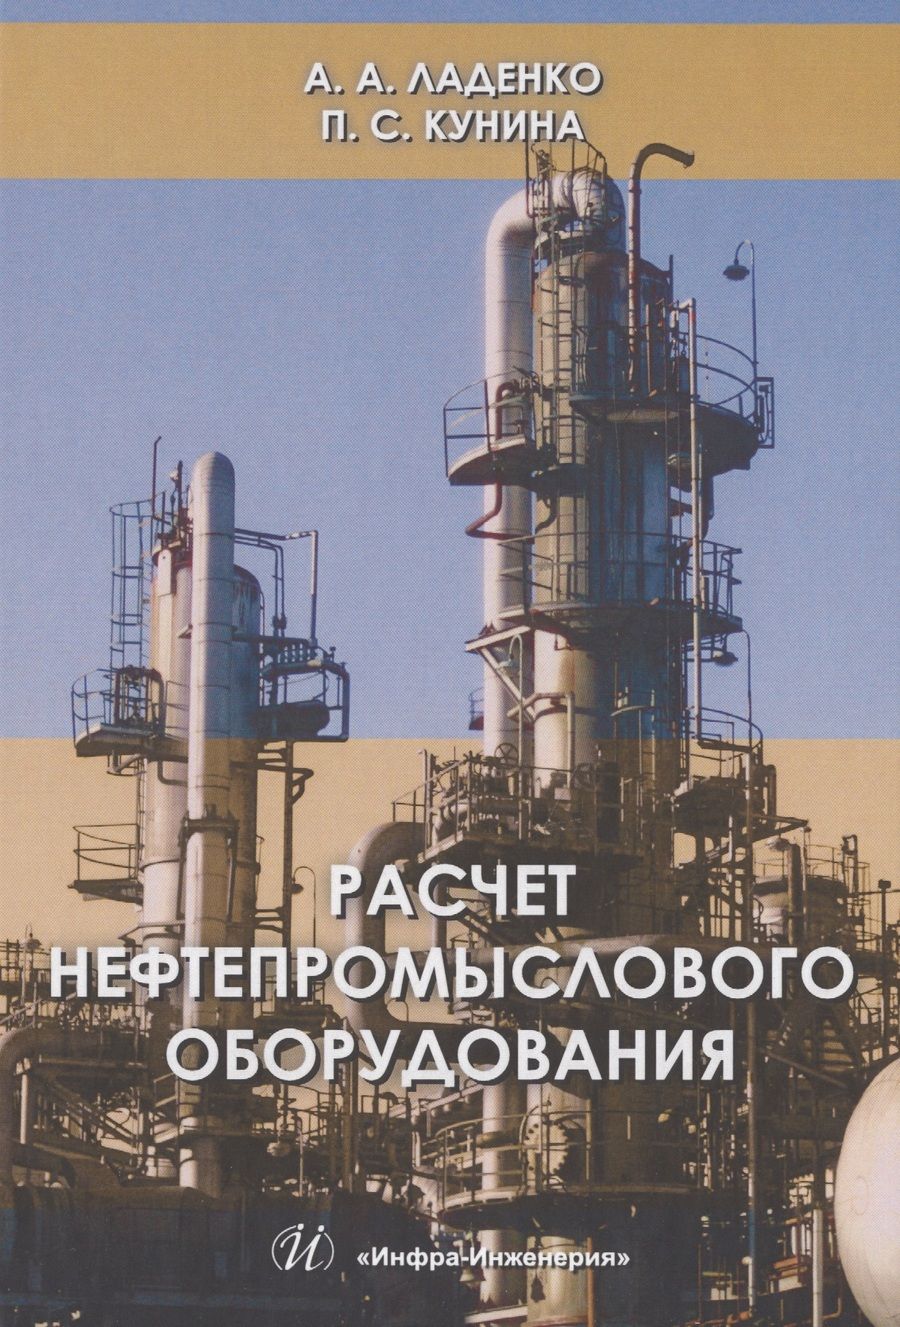 Обложка книги "Ладенко, Кунина: Расчет нефтепромыслового оборудования. Учебное пособие"